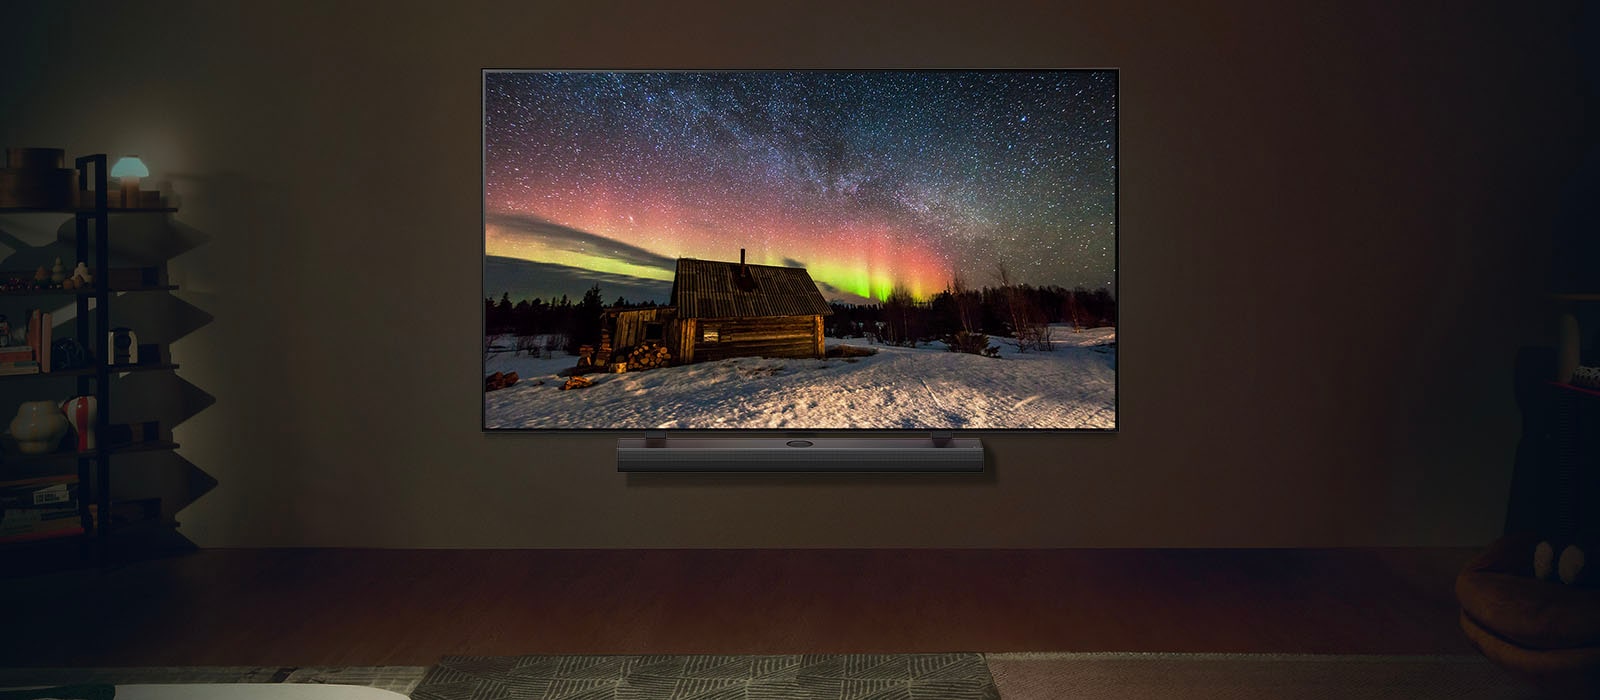 Μια εικόνα μιας LG TV και ενός LG Soundbar σε ένα σύγχρονο σαλόνι τη νύχτα. Εμφανίζεται μια εικόνα του Βόρειου Σέλας με τα ιδανικά επίπεδα φωτεινότητας.